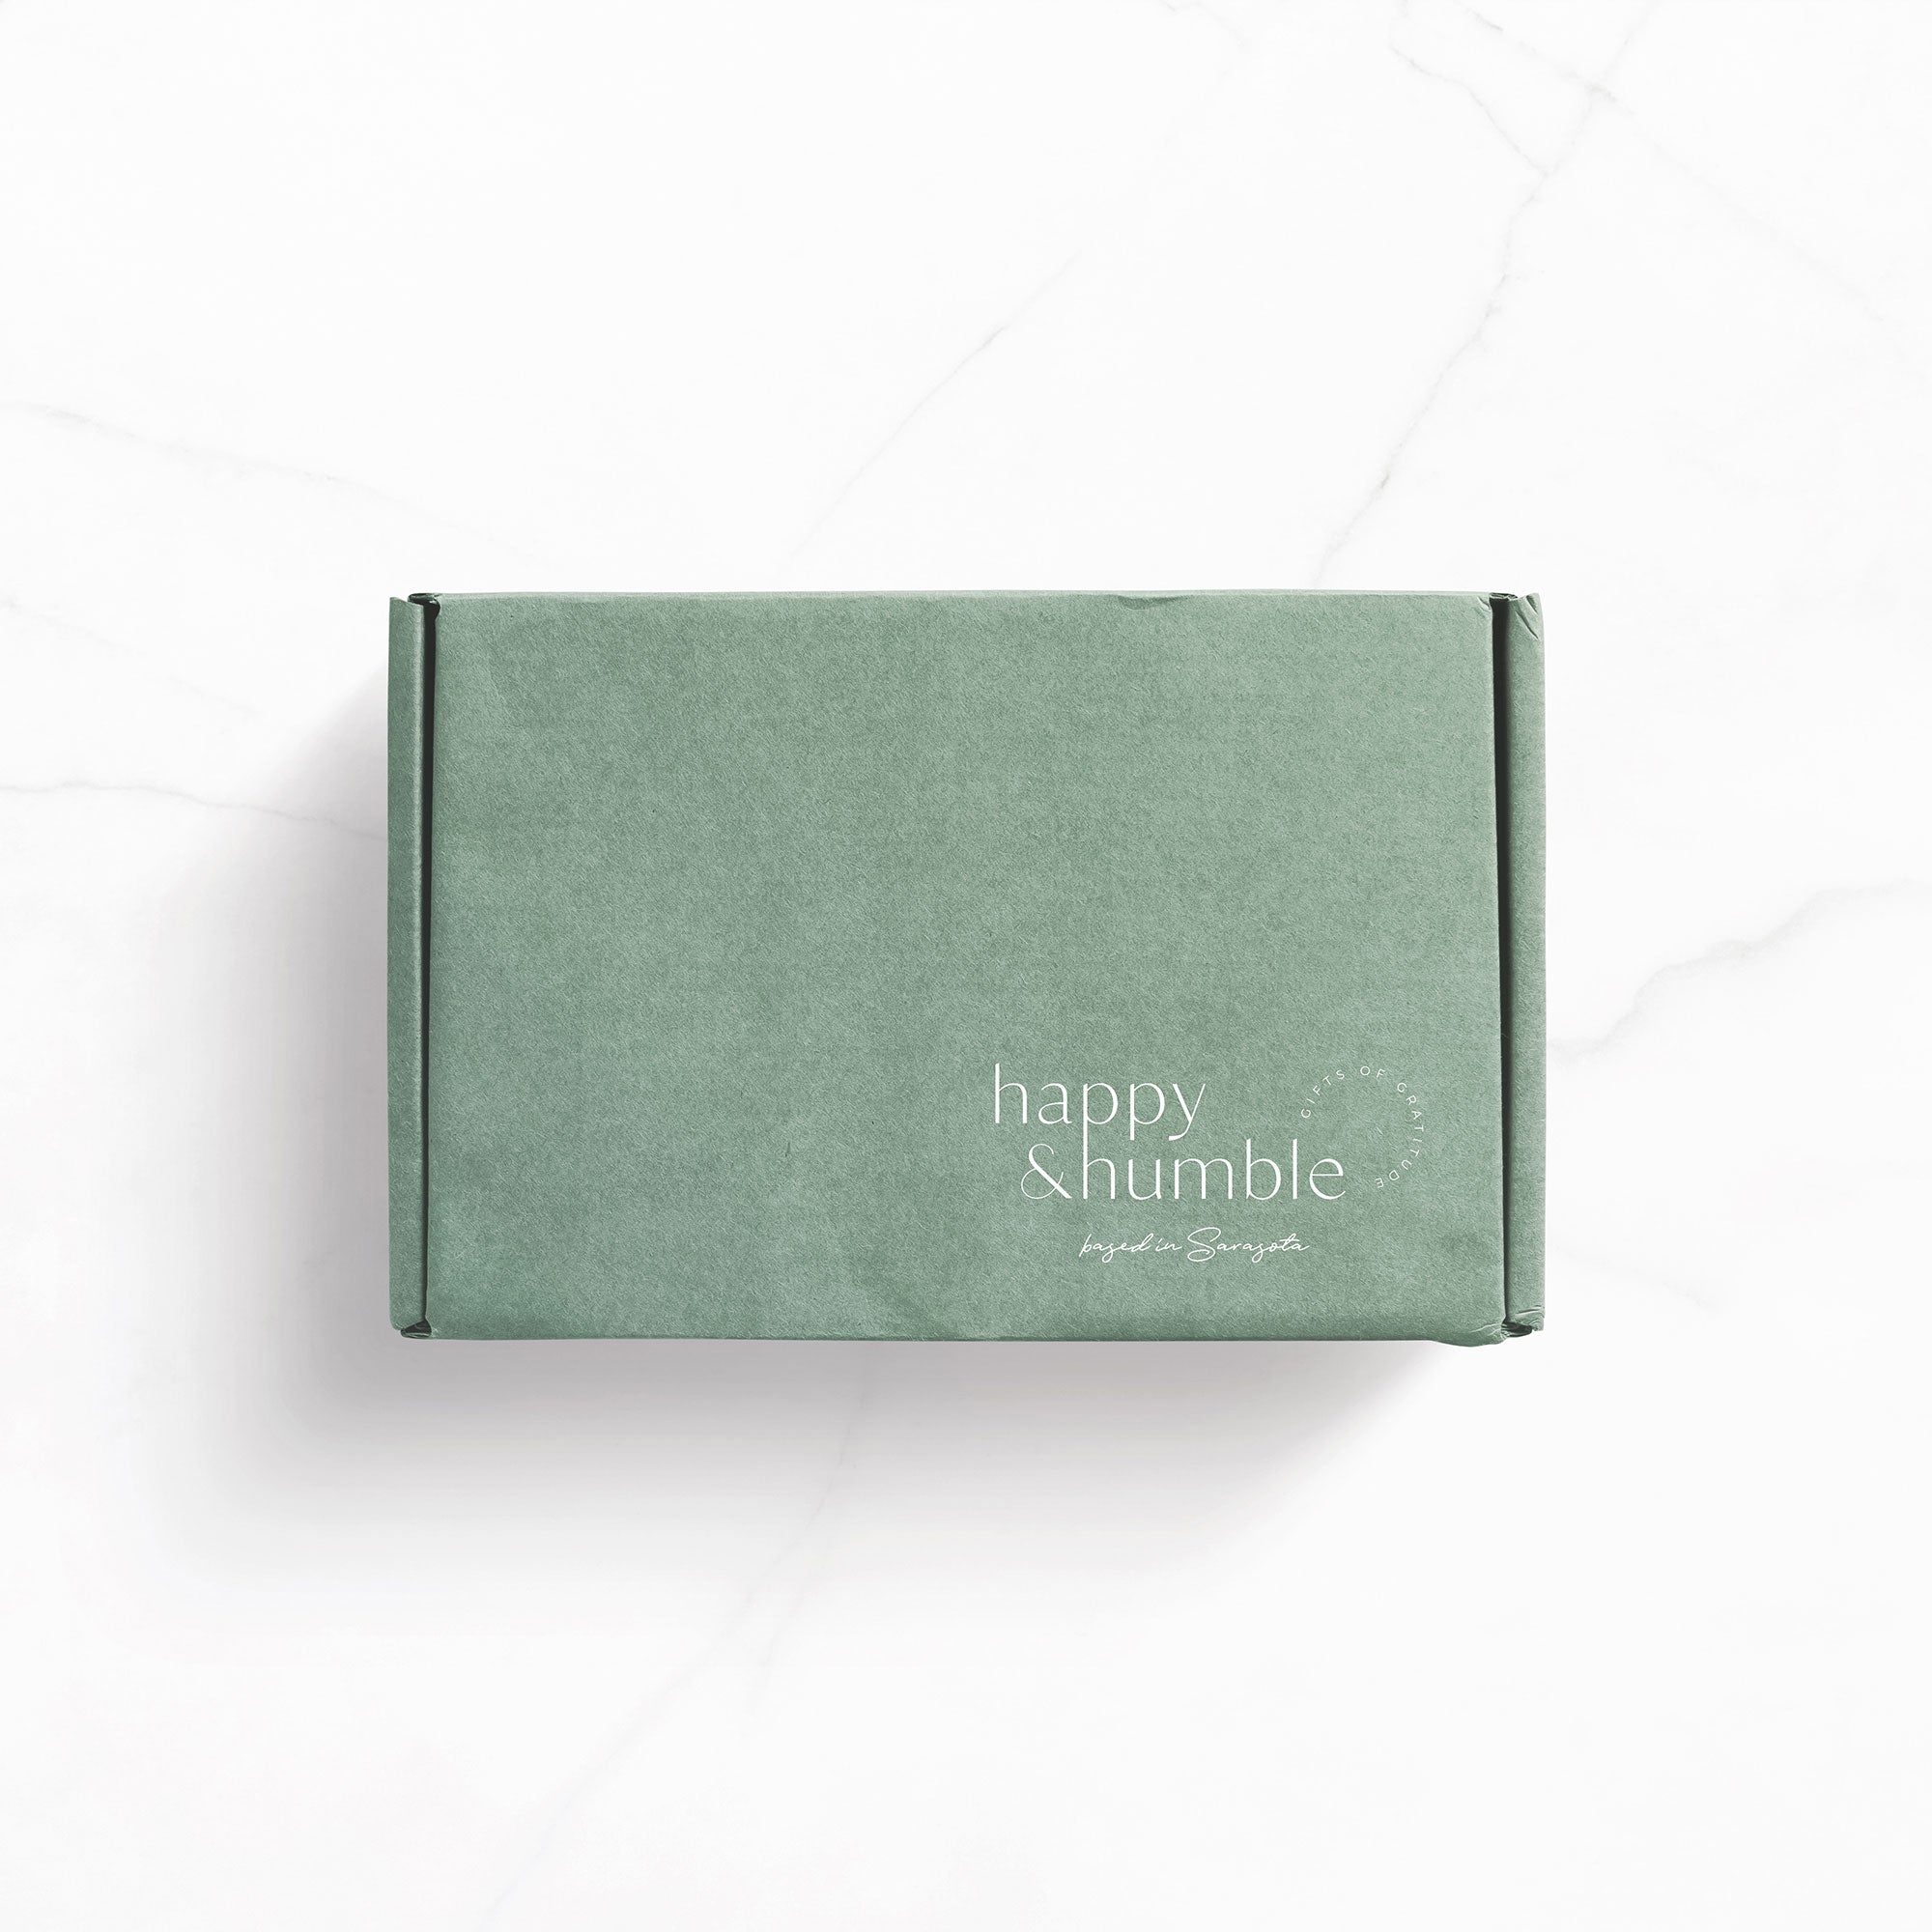 Karolina Król Studio custom minimalist shipping box design